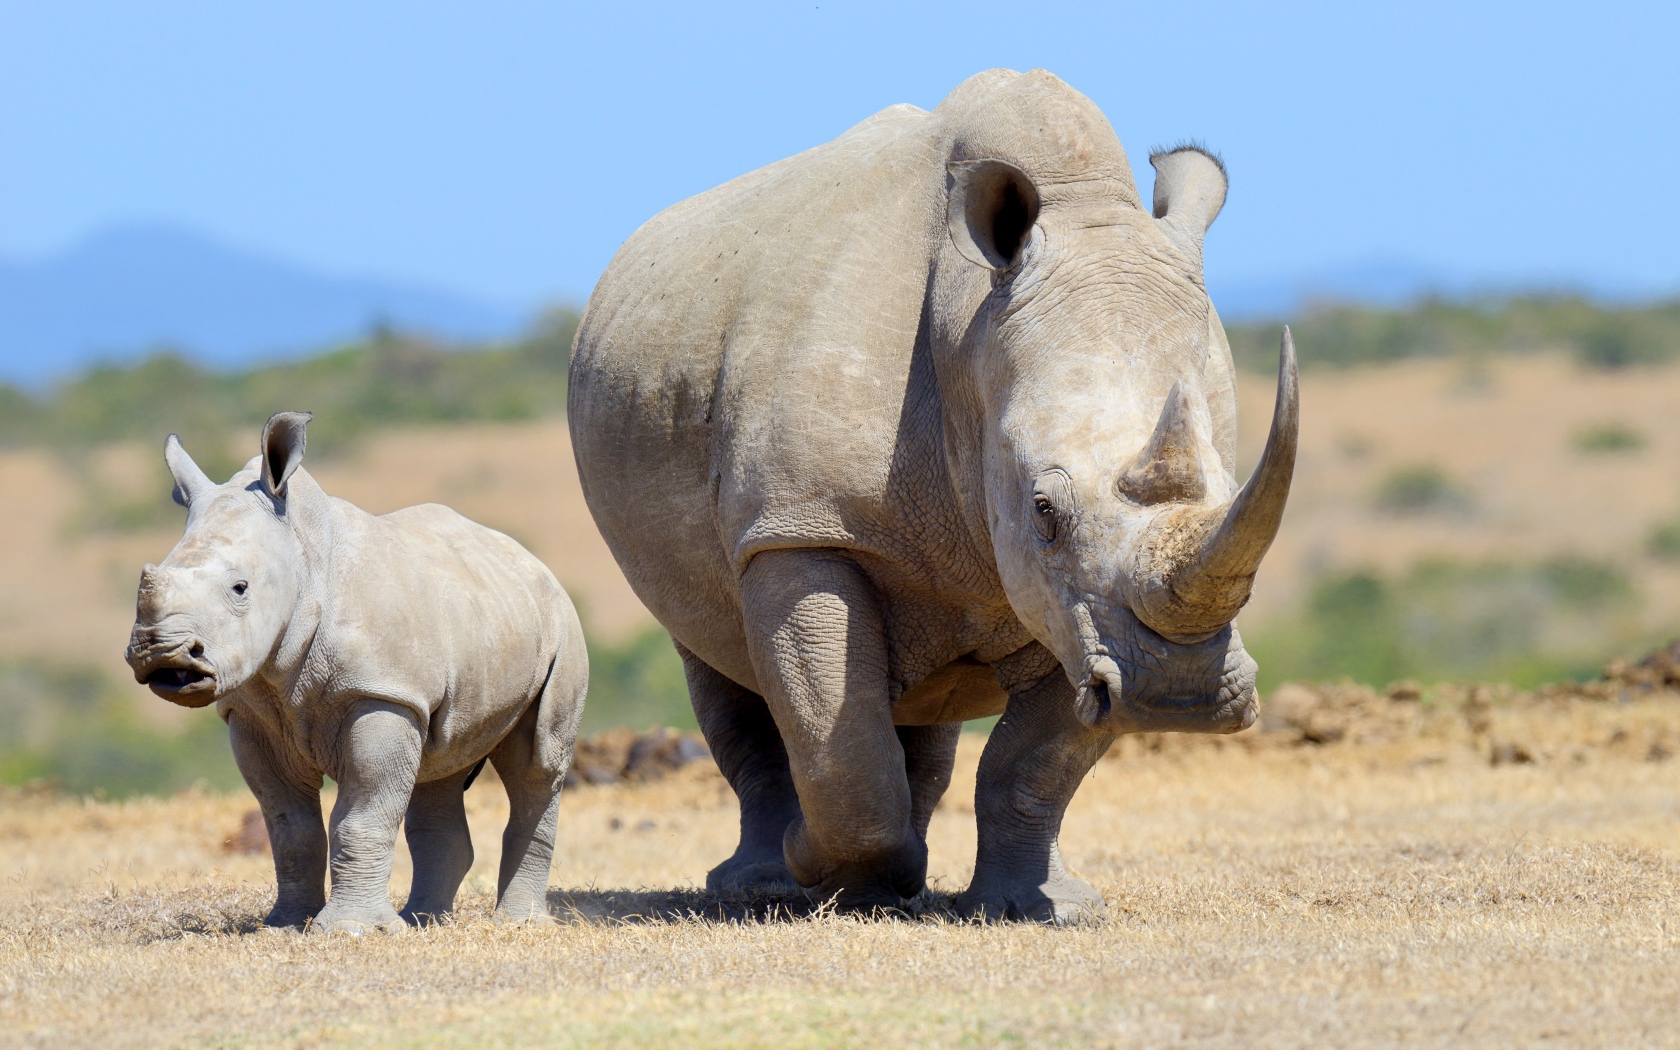 Большой носорог с детенышем идут по земле 